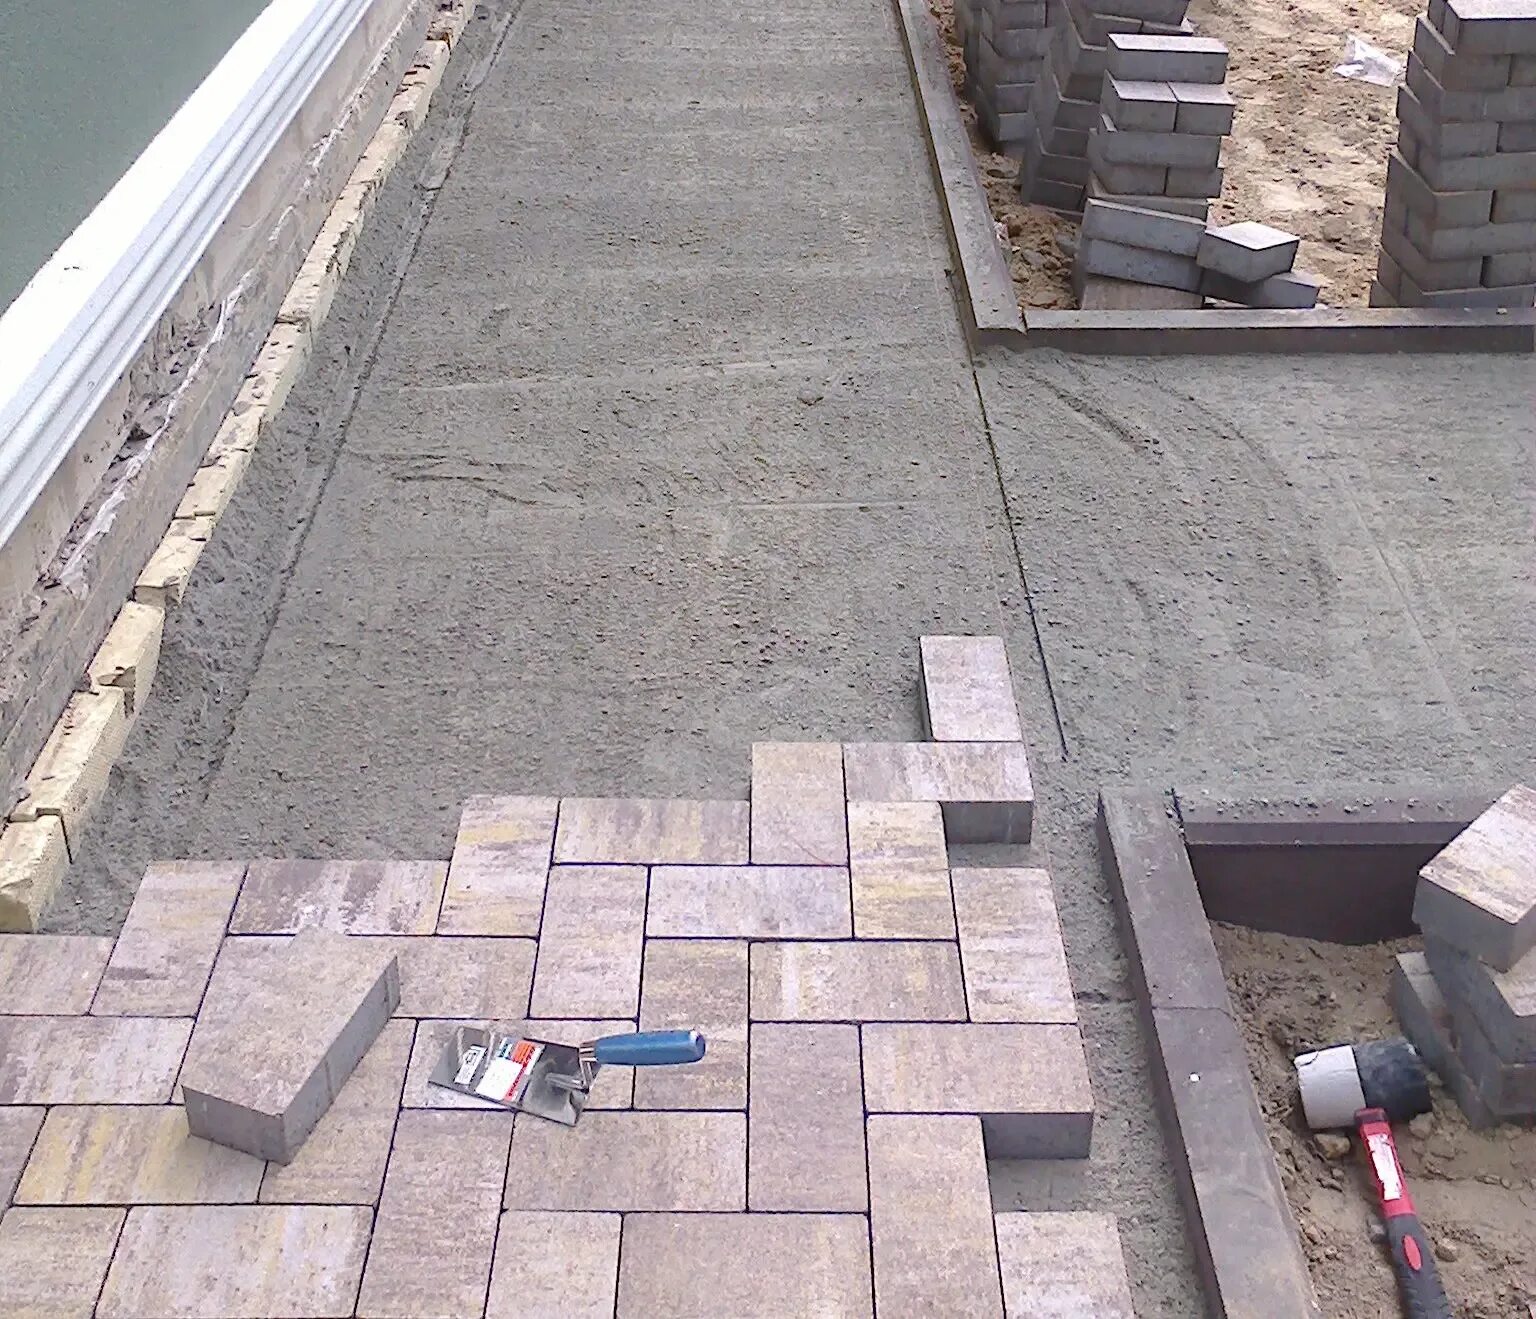 Укладка брусчатки на бетонное основание. Тротуарная плитка на бетонное основание. Укладка тротуарной плитки на бетон. Укладка брусчатки нпбетон.